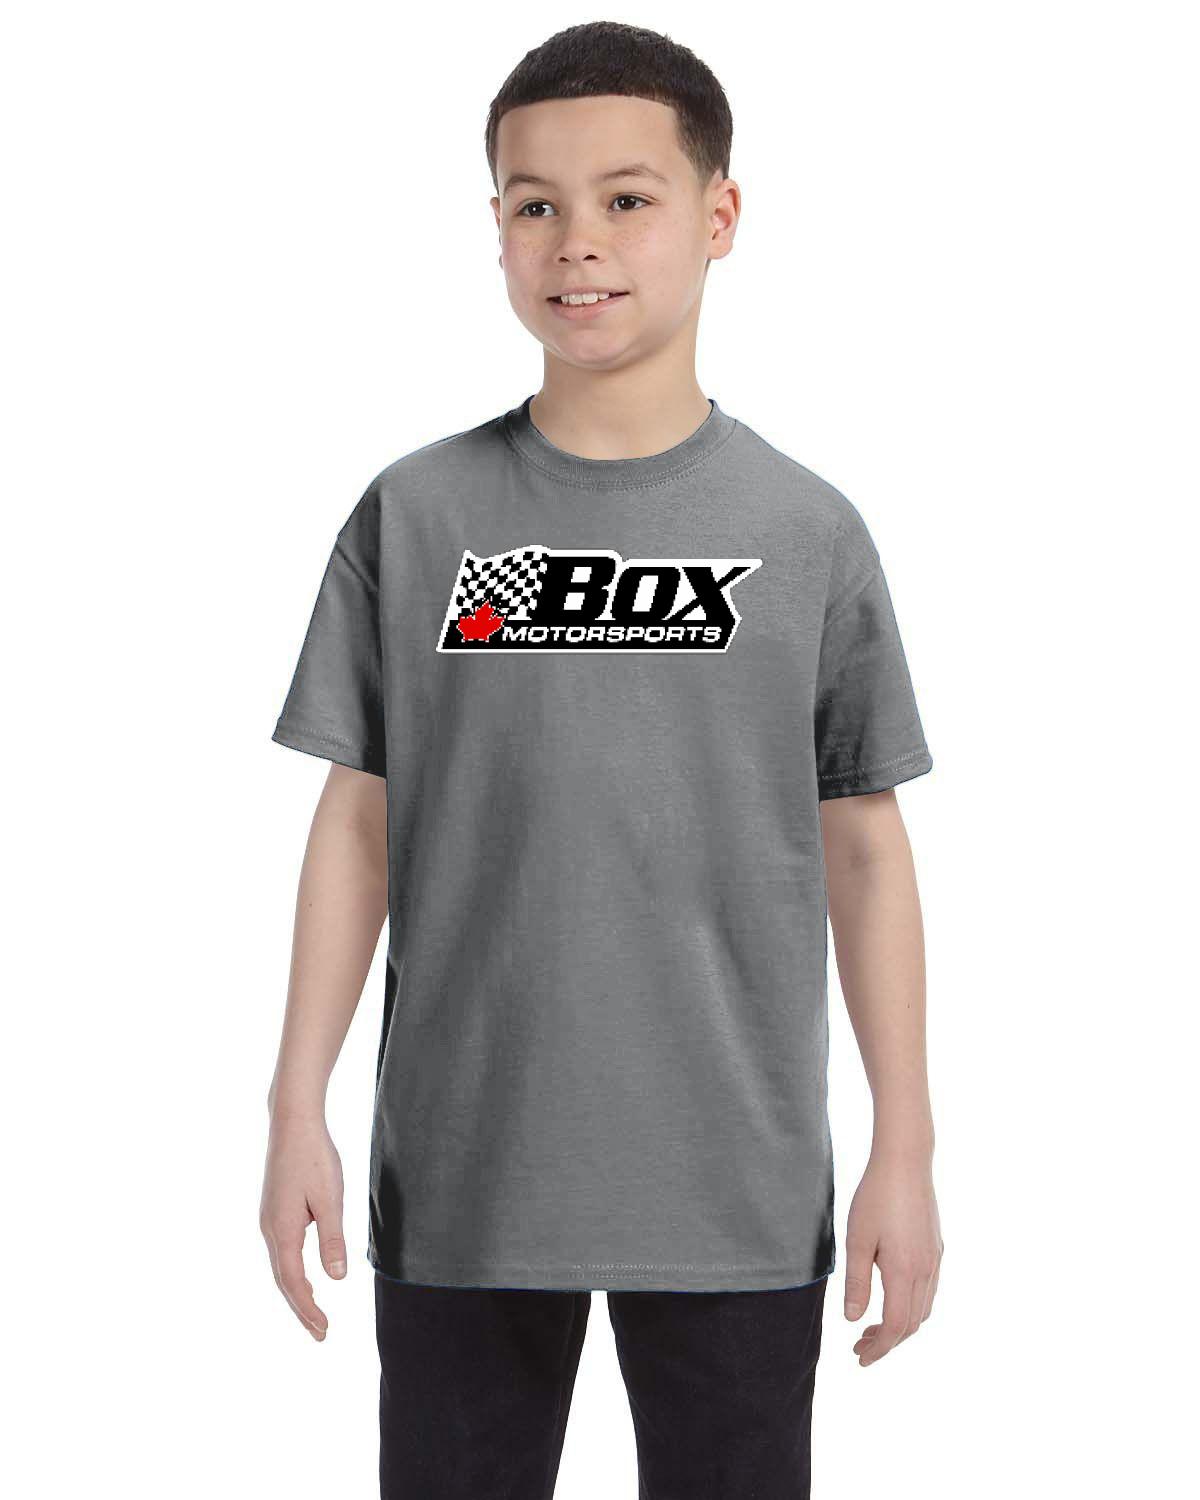 Box Motorsports Kid's T-Shirt